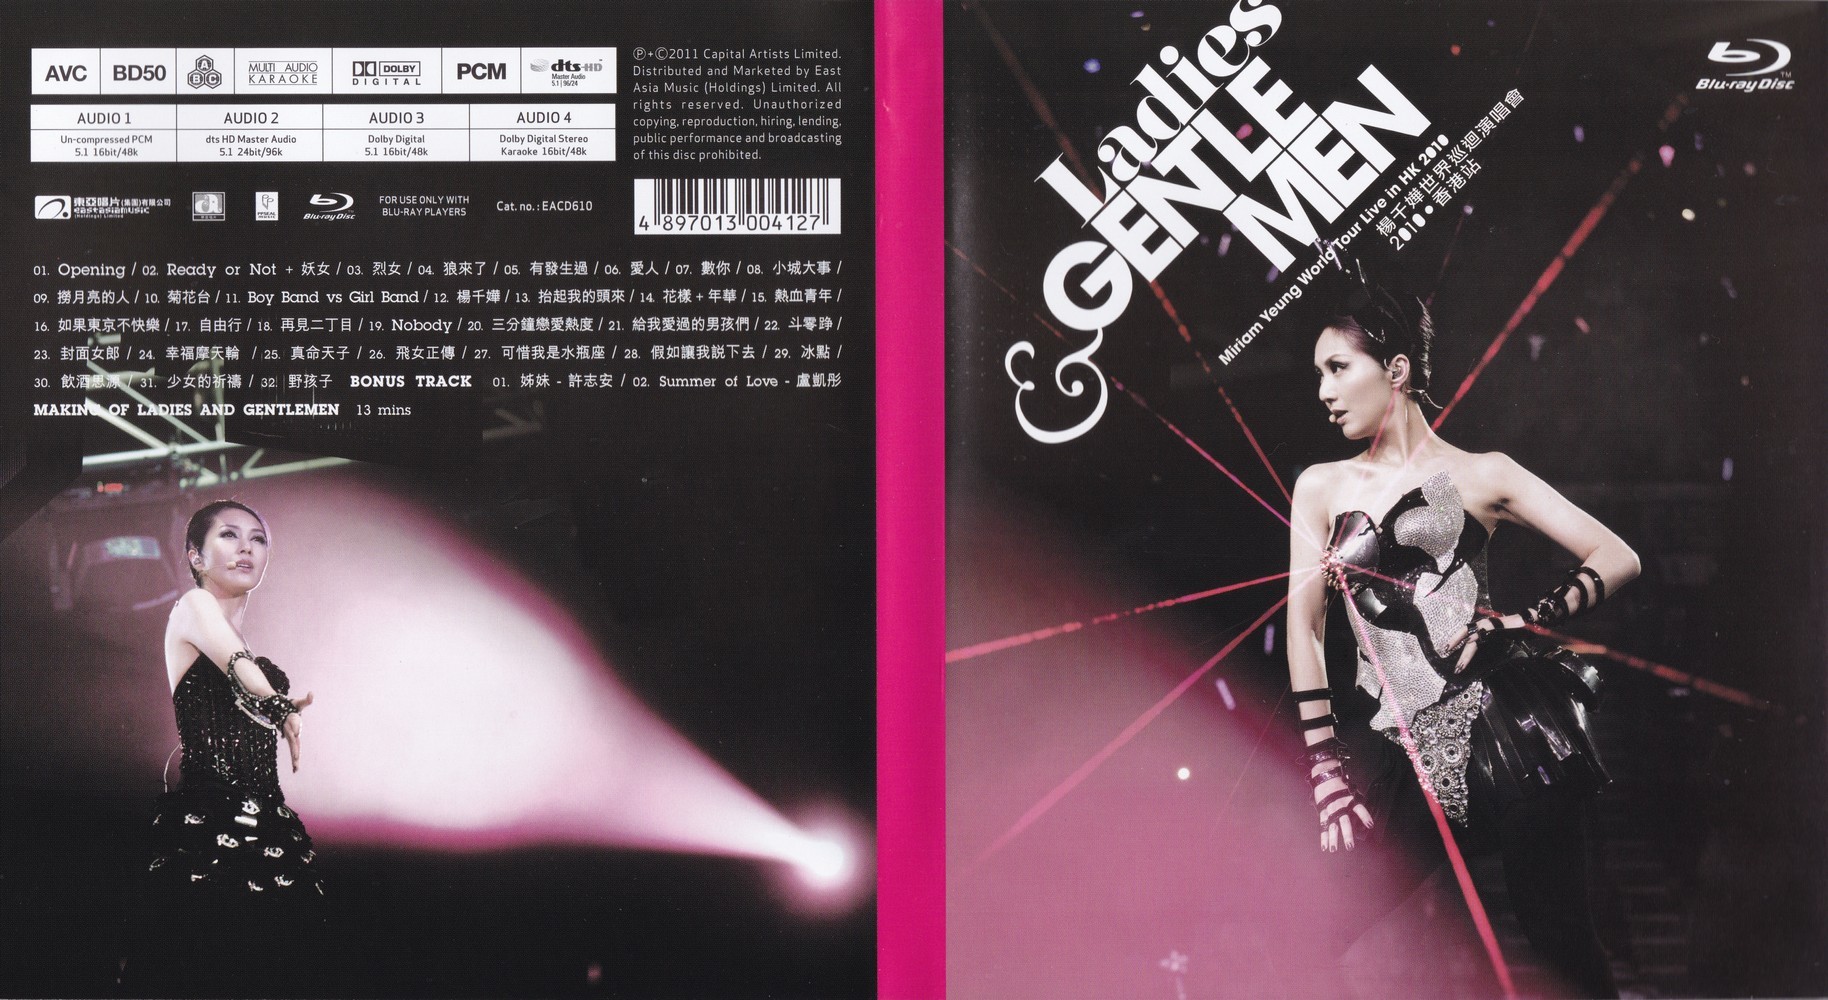 [杨千嬅演唱会].Ladies.and.Gentlemen.Miriam.Yeung.World.Tour.Live.in.HK.2010.HKG.BluRay.1080i.AVC.DTS-HD.MA.5.1-Ansonguan    42.83G-1.jpg